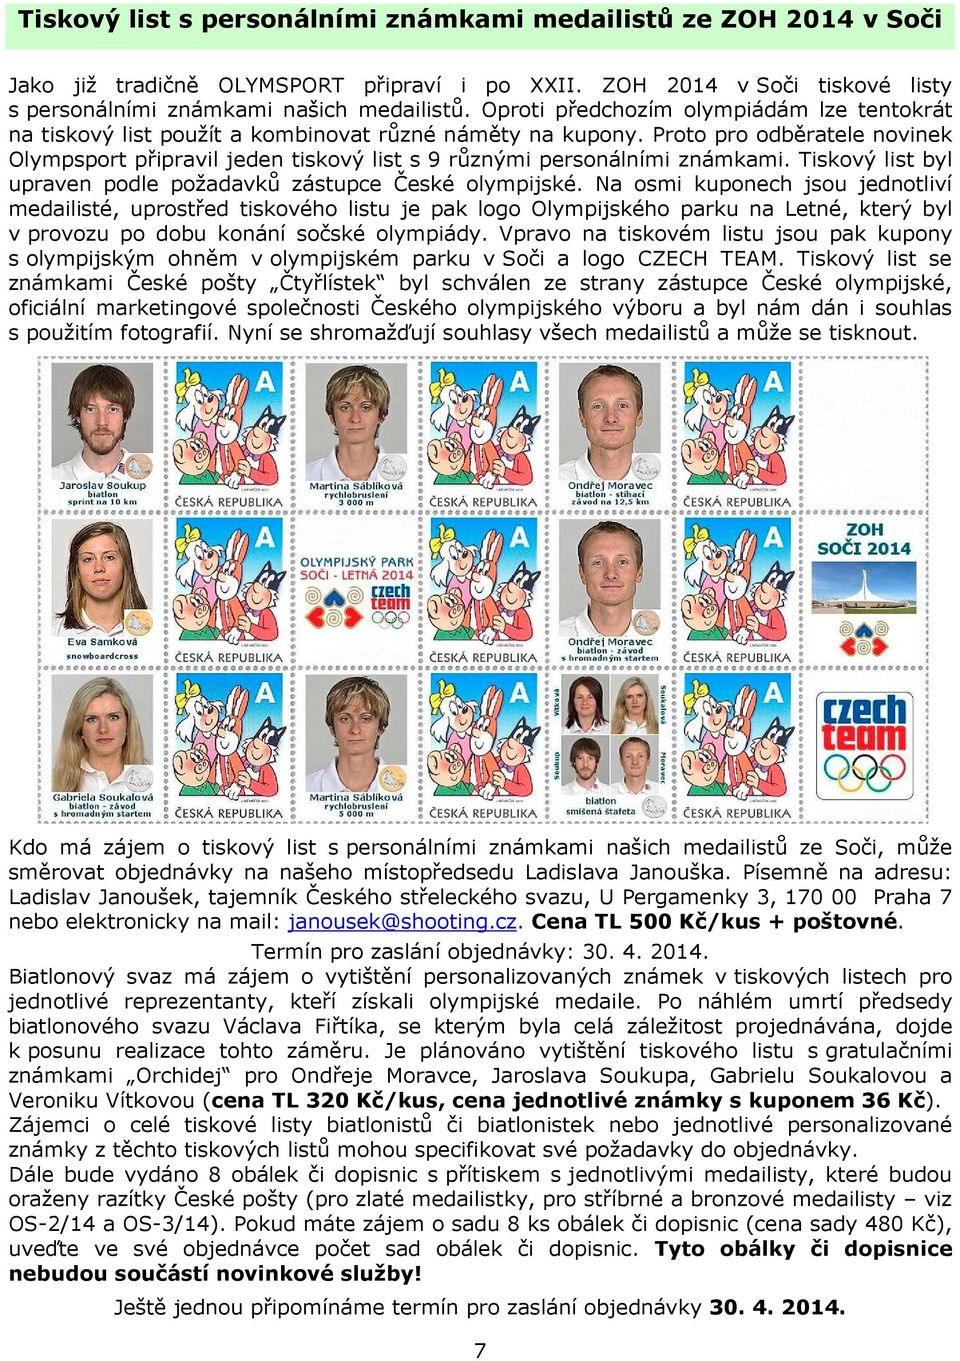 Proto pro odběratele novinek Olympsport připravil jeden tiskový list s 9 různými personálními známkami. Tiskový list byl upraven podle požadavků zástupce České olympijské.